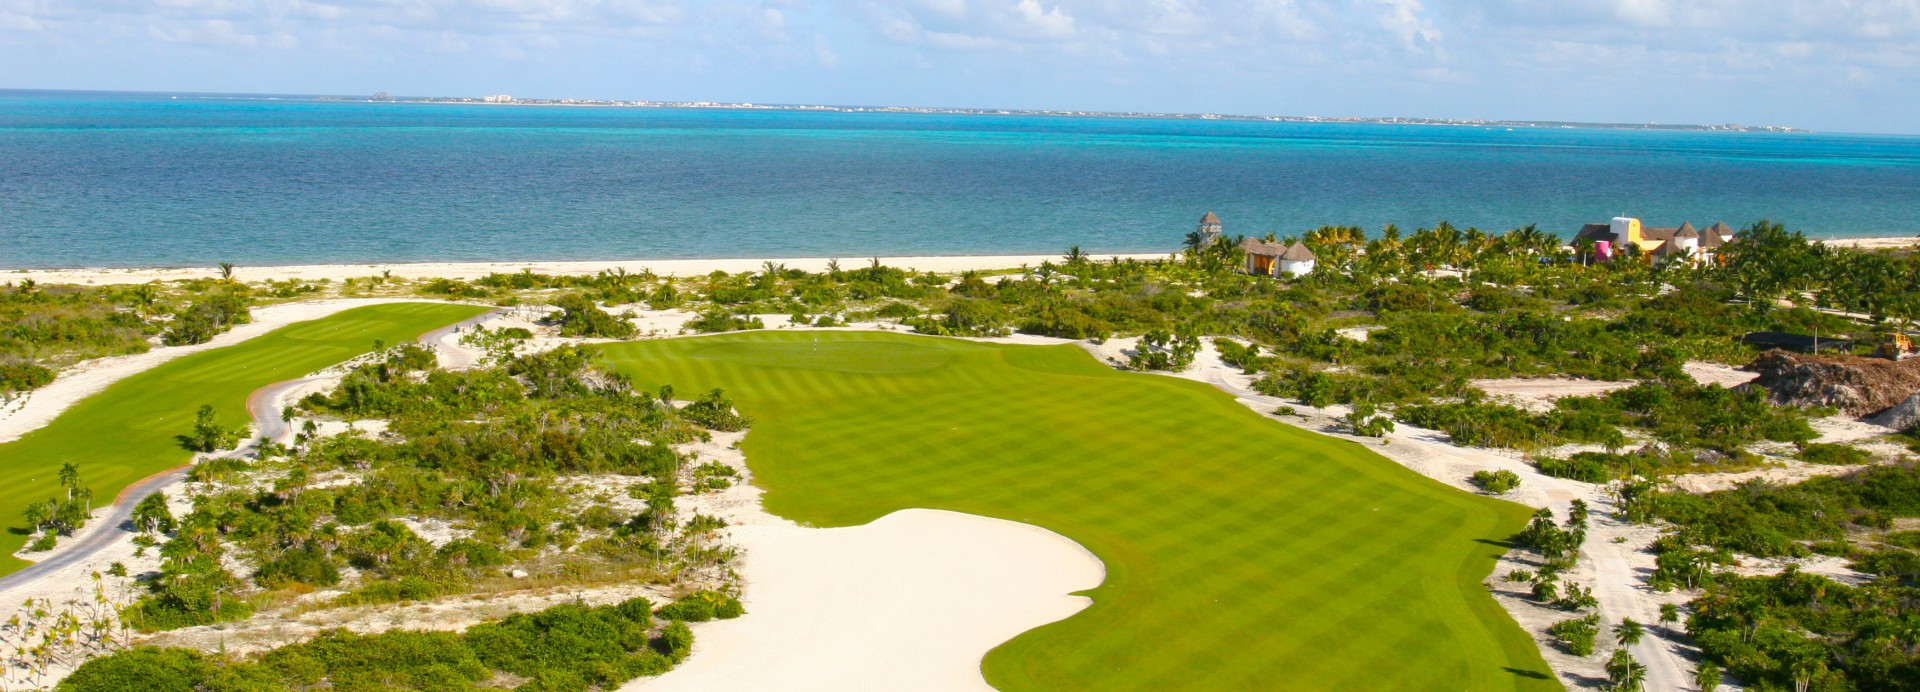 Playa Mujeres Golf Club  | Golfové zájezdy, golfová dovolená, luxusní golf